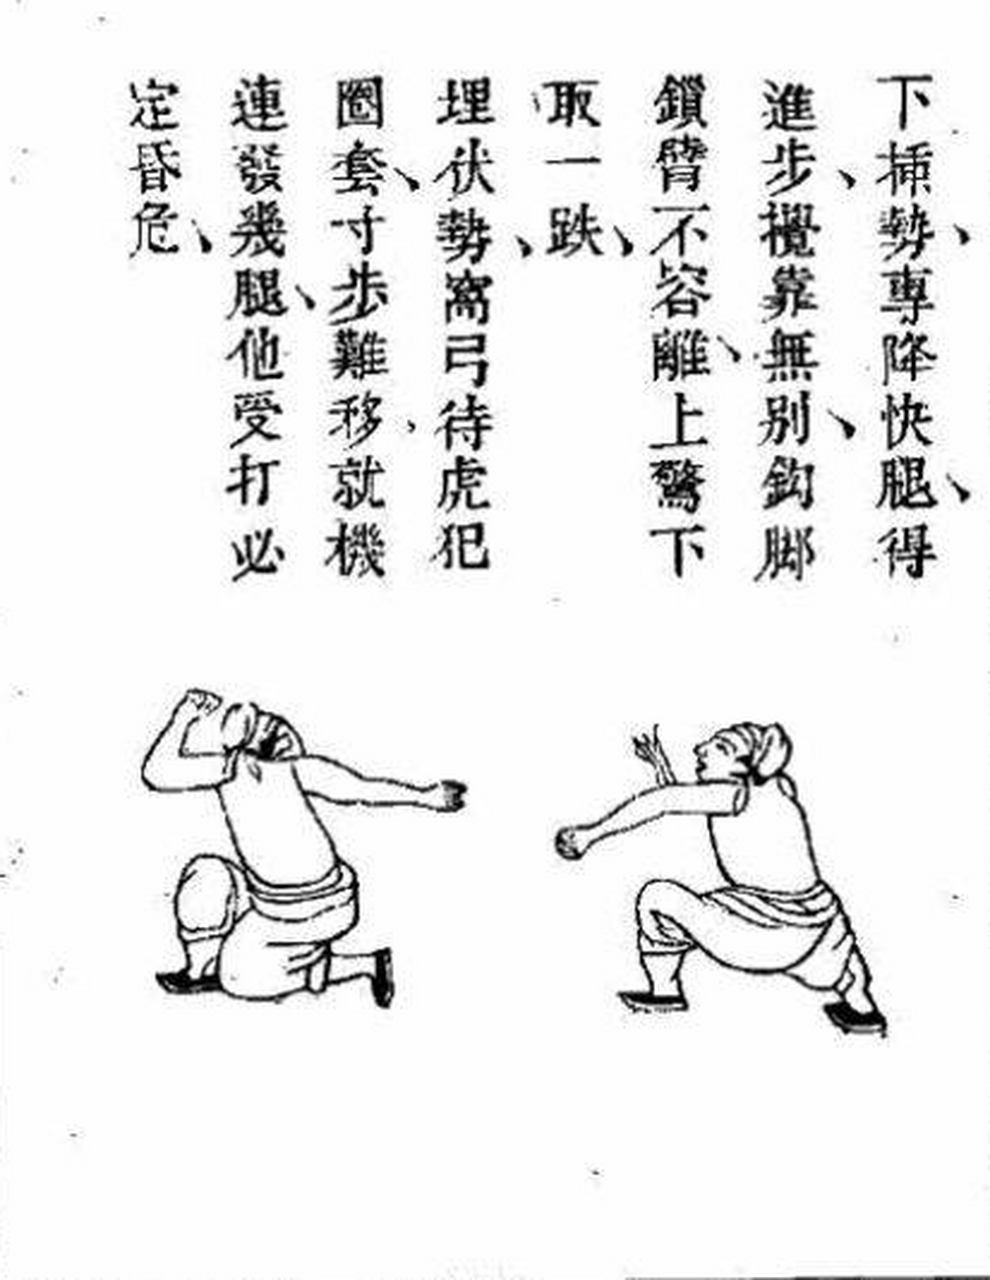 传统武术拳种:南兵拳 南兵拳作为浙江地区的一门地方拳种,其历史可以